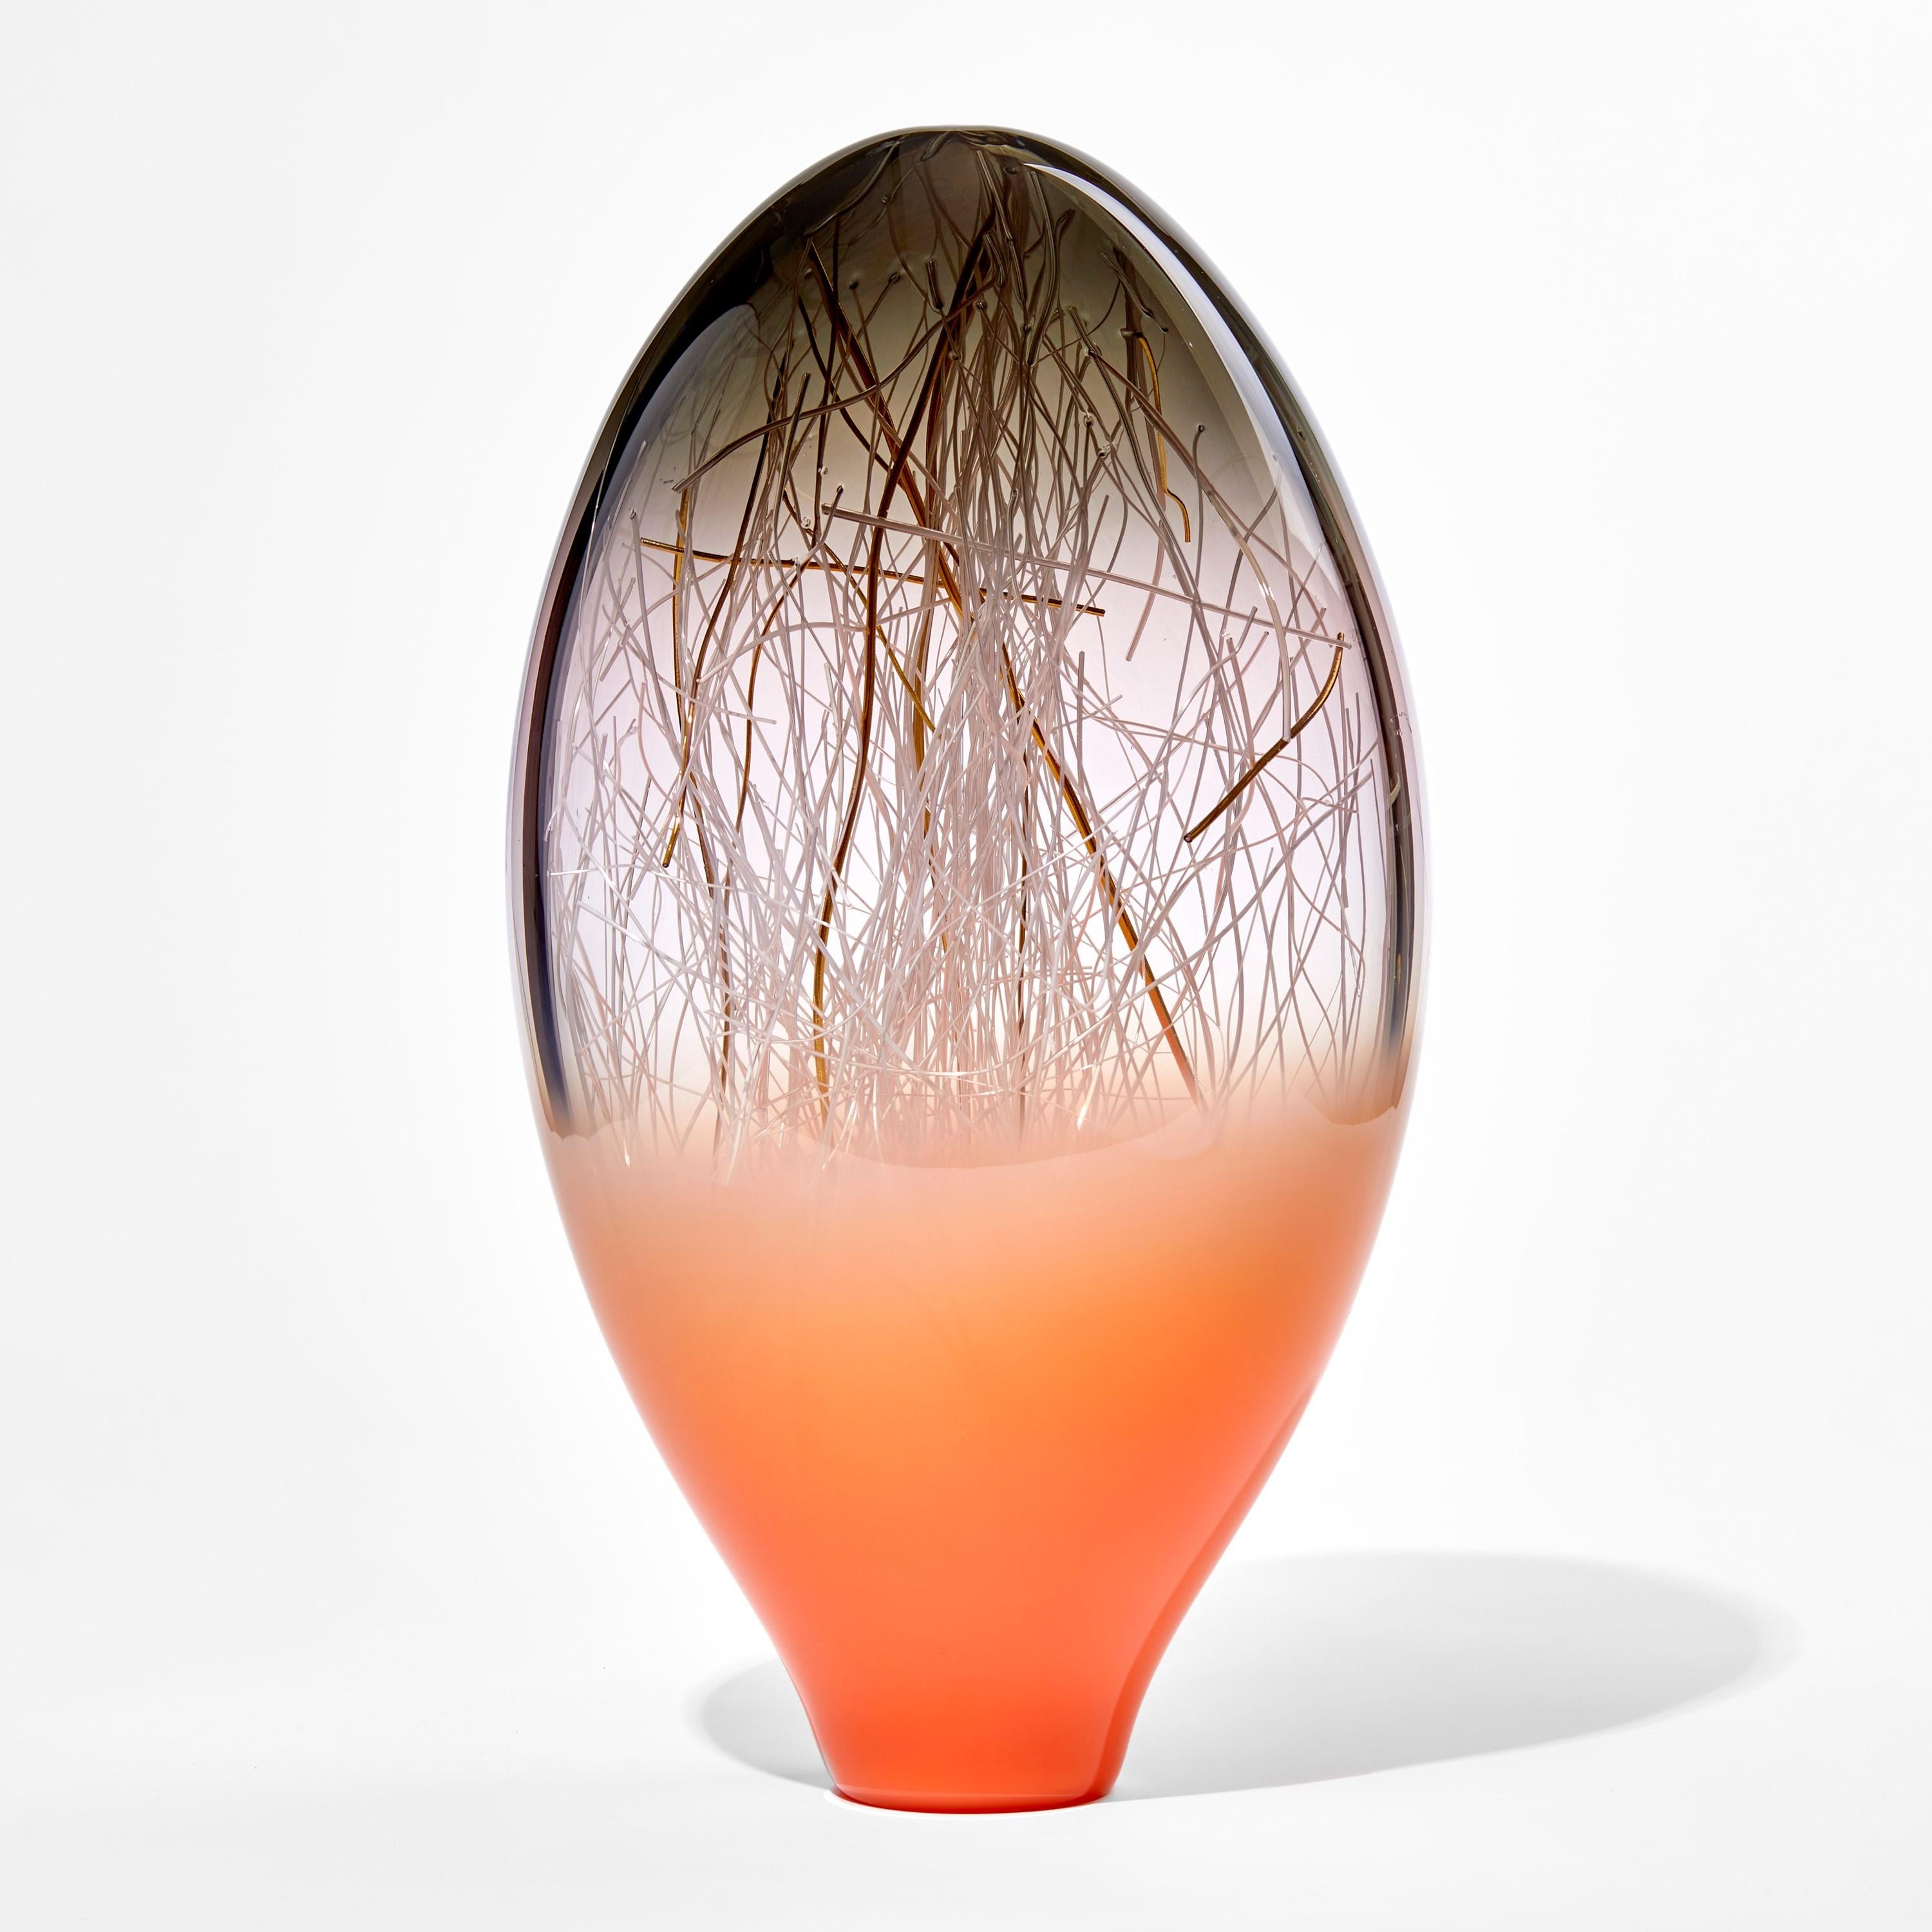 Ore in Salmon & Grey est une sculpture de verre unique en orange corail, gris et verre transparent réalisée par les artistes collaboratifs Hanne Enemark (danois) et Louis Thompson (britannique). La forme extérieure en verre contient une multitude de